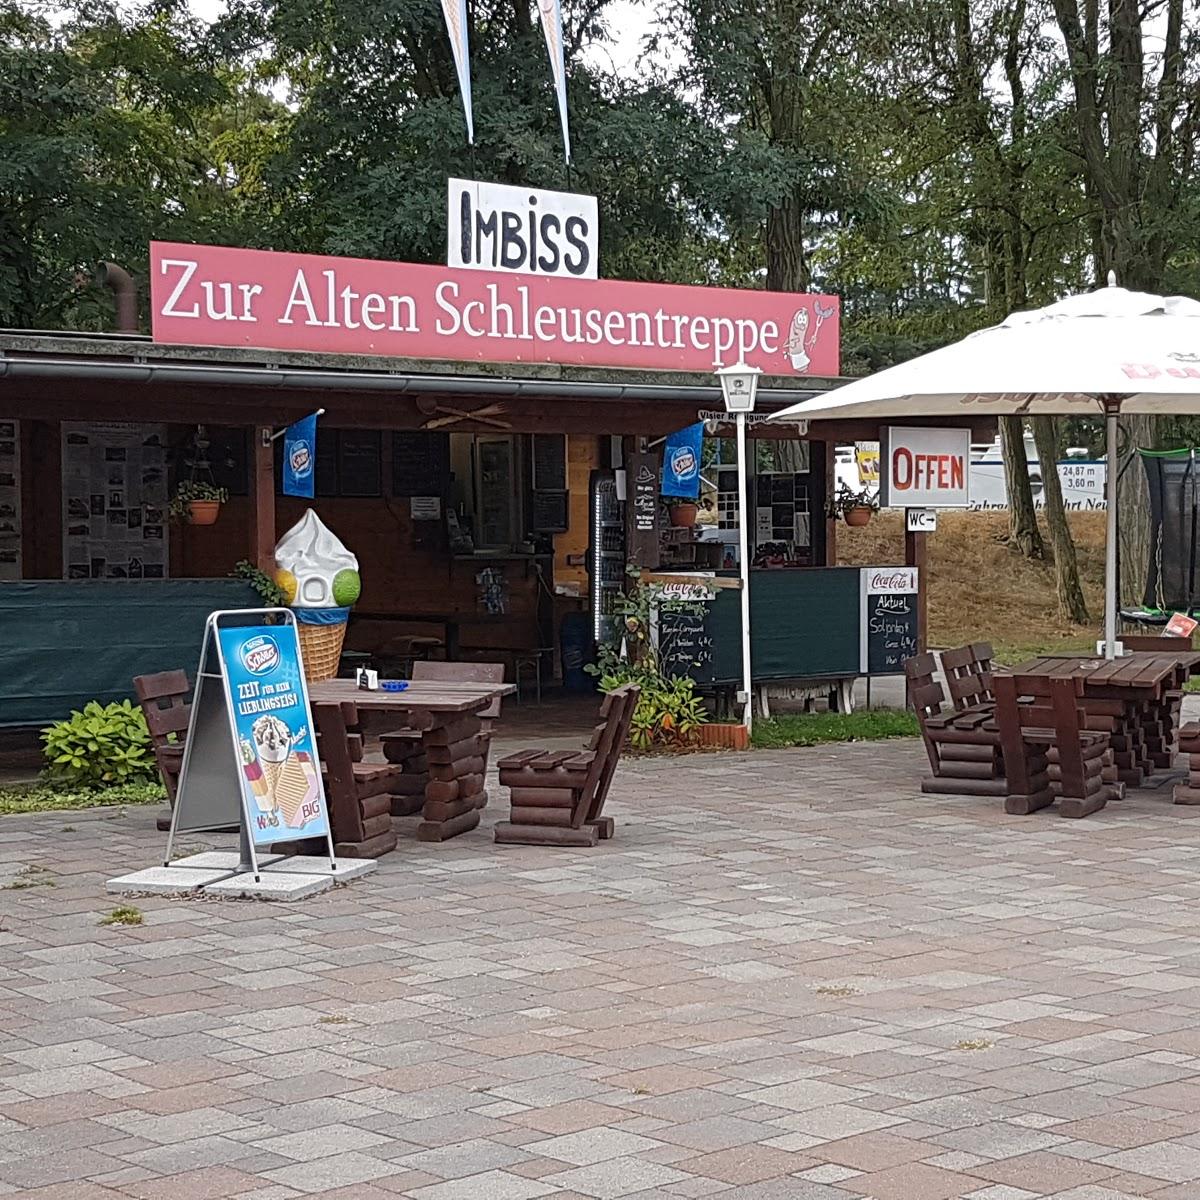 Restaurant "Imbiss Zur Alten Schleusentreppe" in Niederfinow